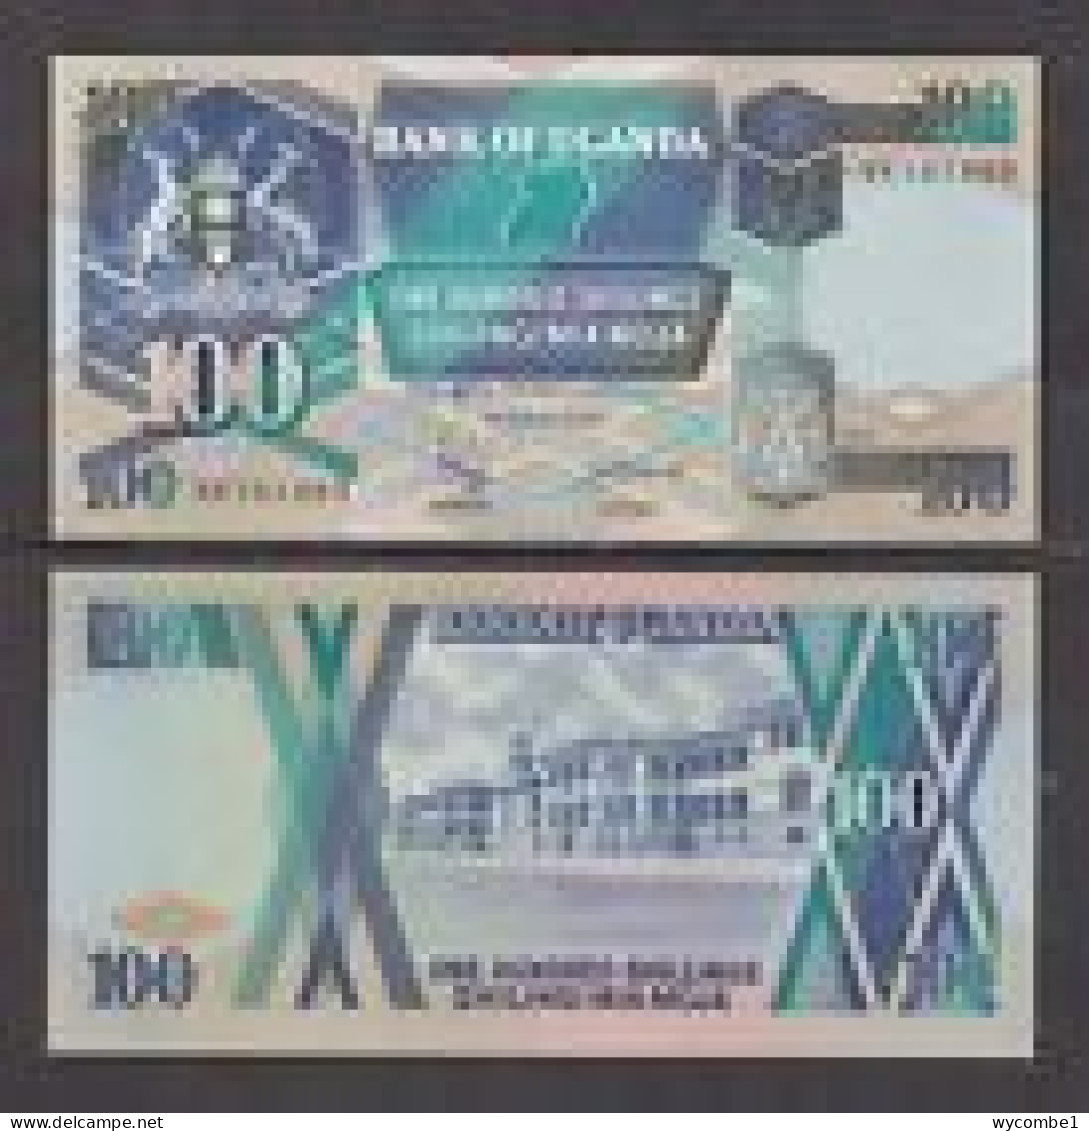 UGANDA - 1996 100 Shillings UNC - Uganda